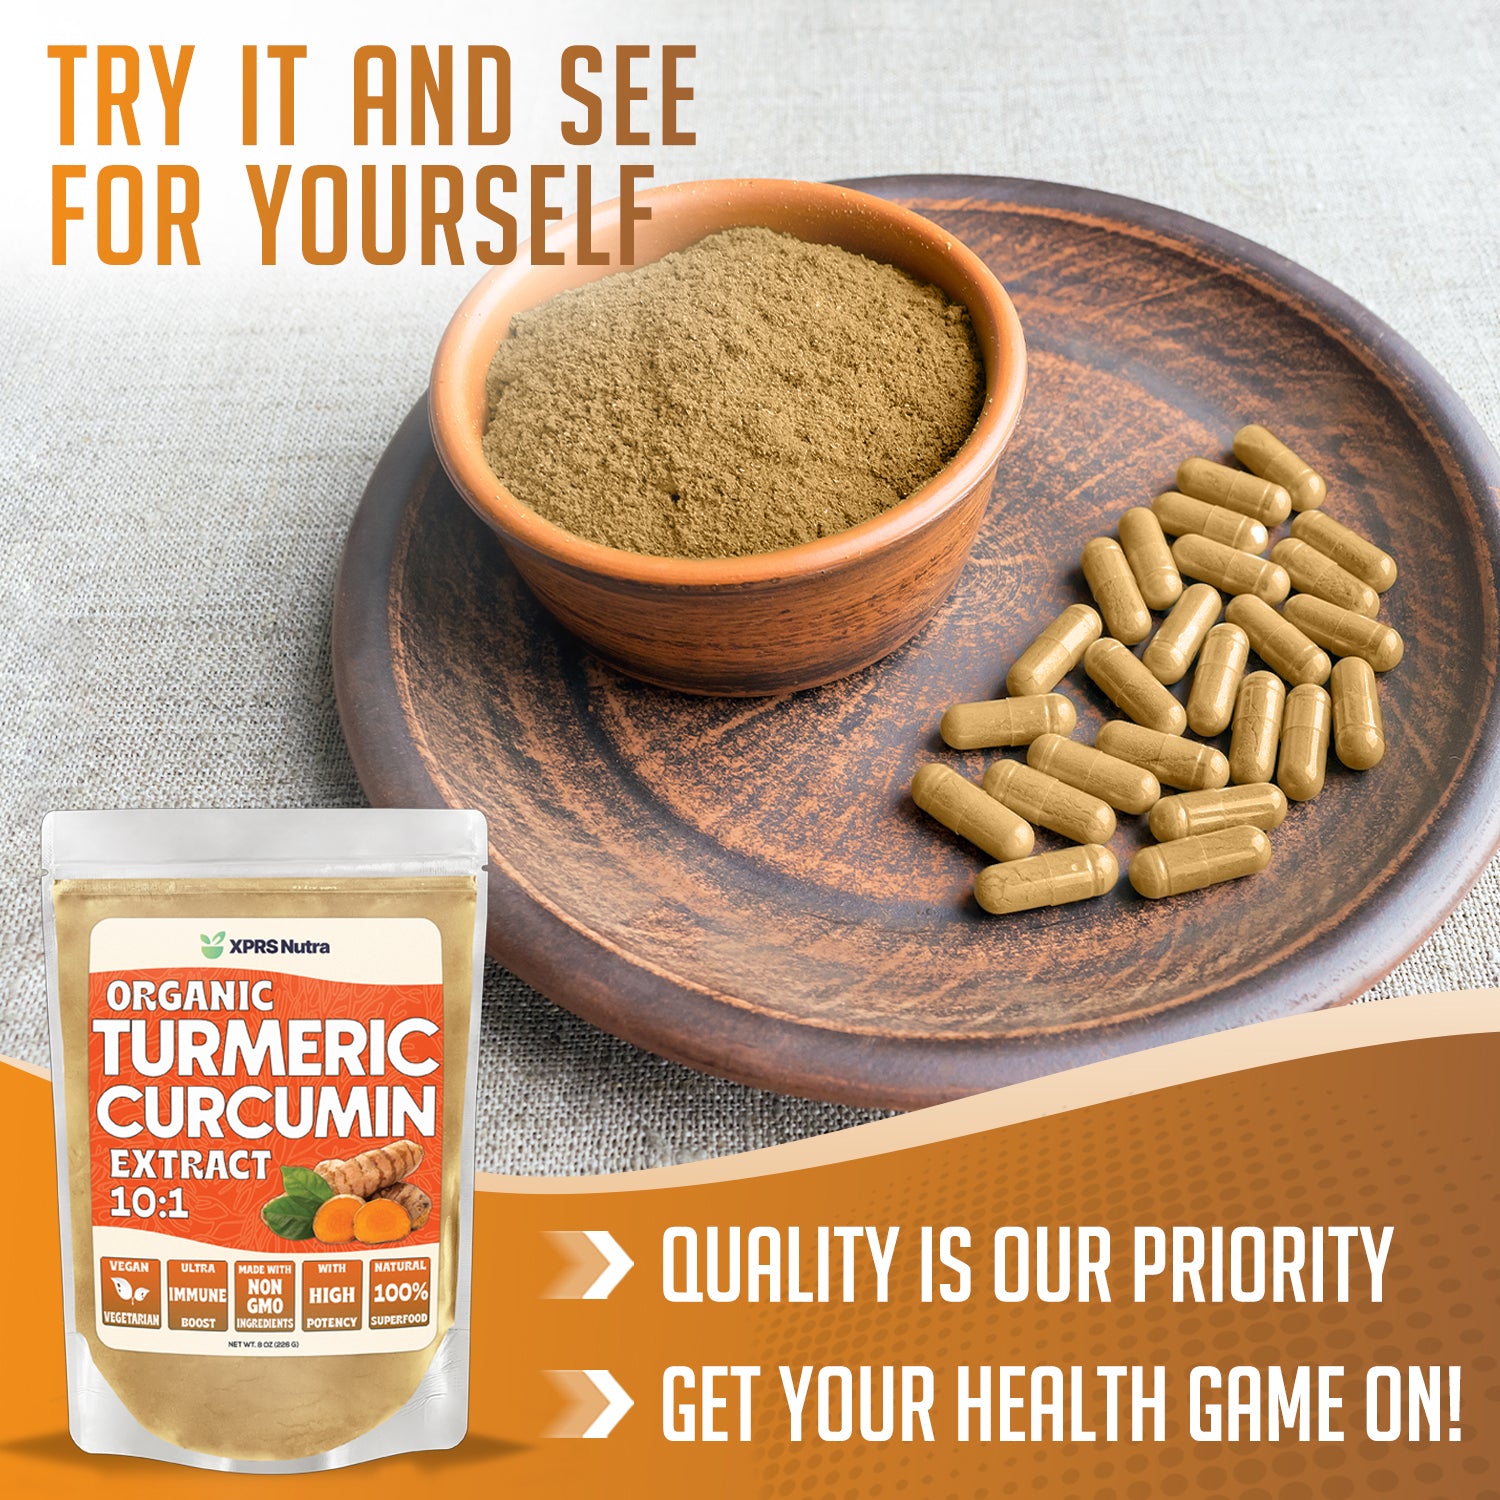 Organic Turmeric Curcumin Powder Extract 10:1